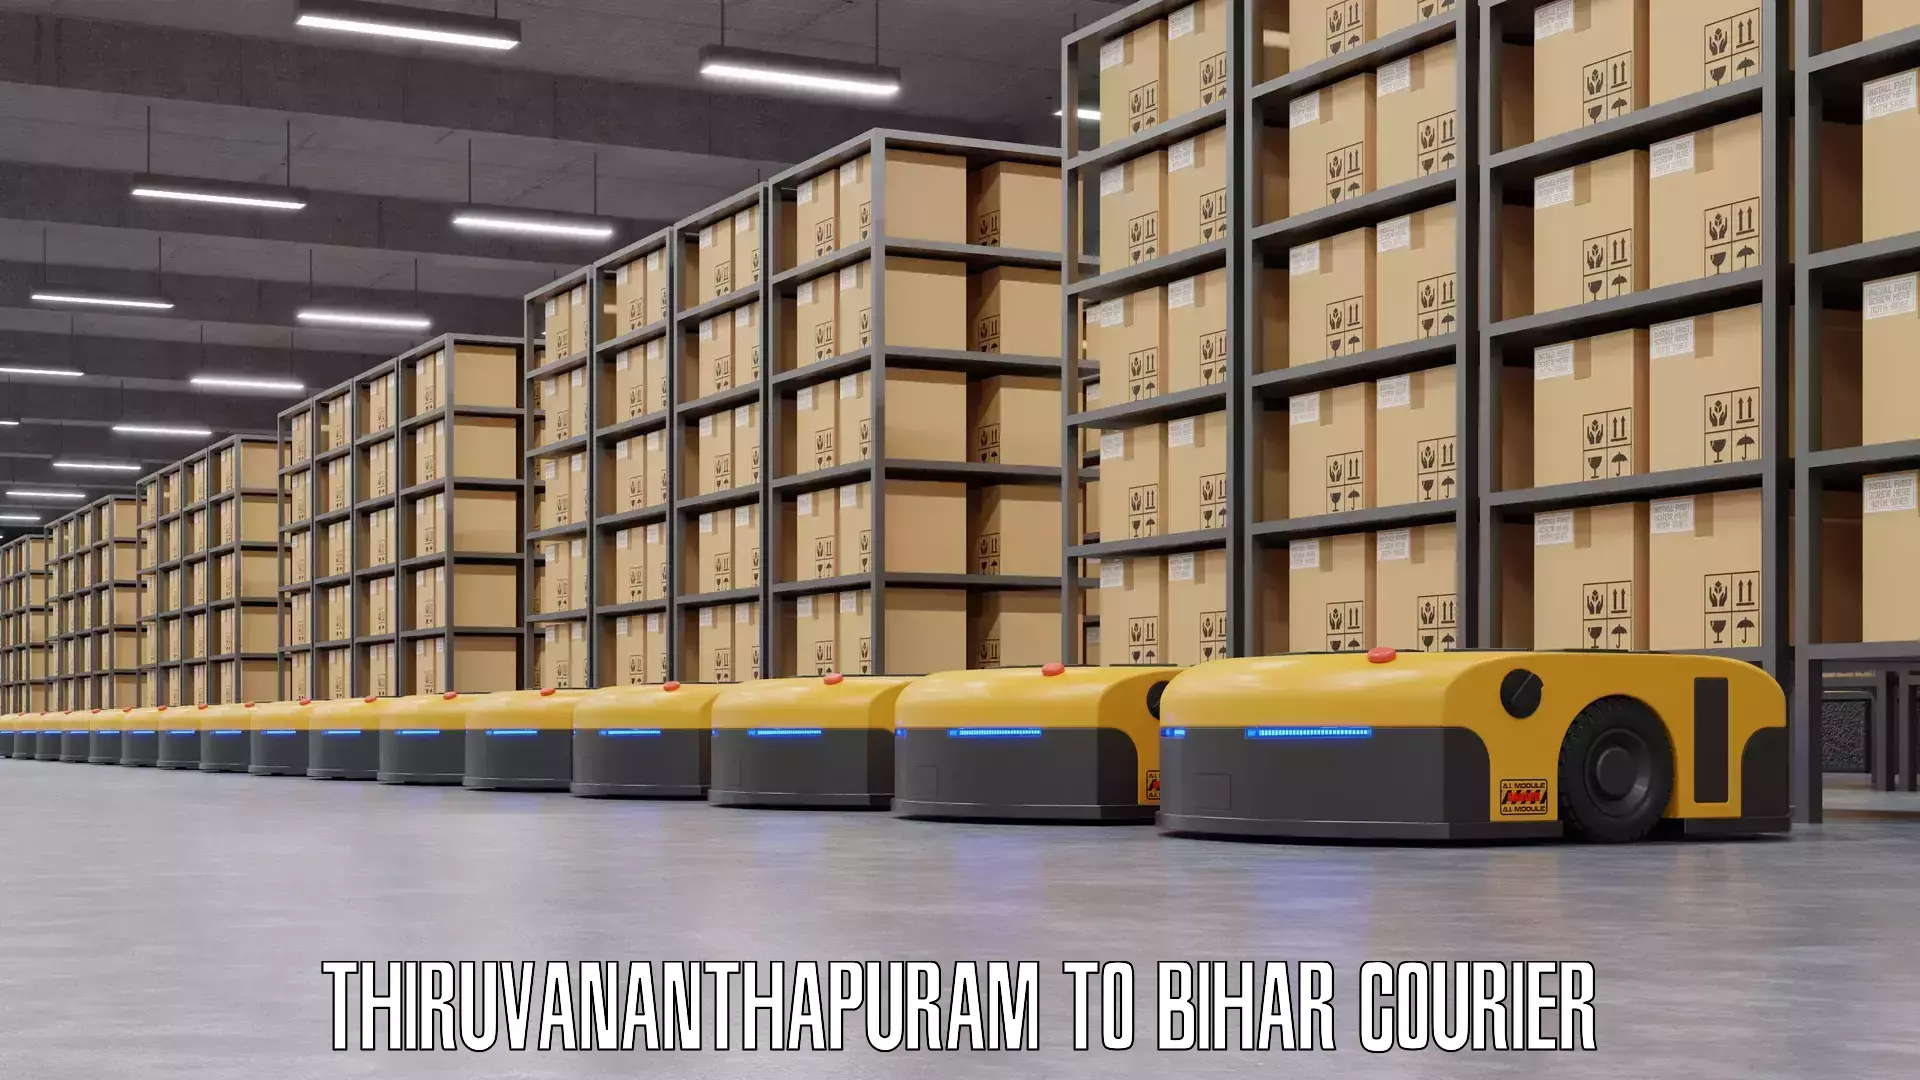 Luggage transport company Thiruvananthapuram to Bihar